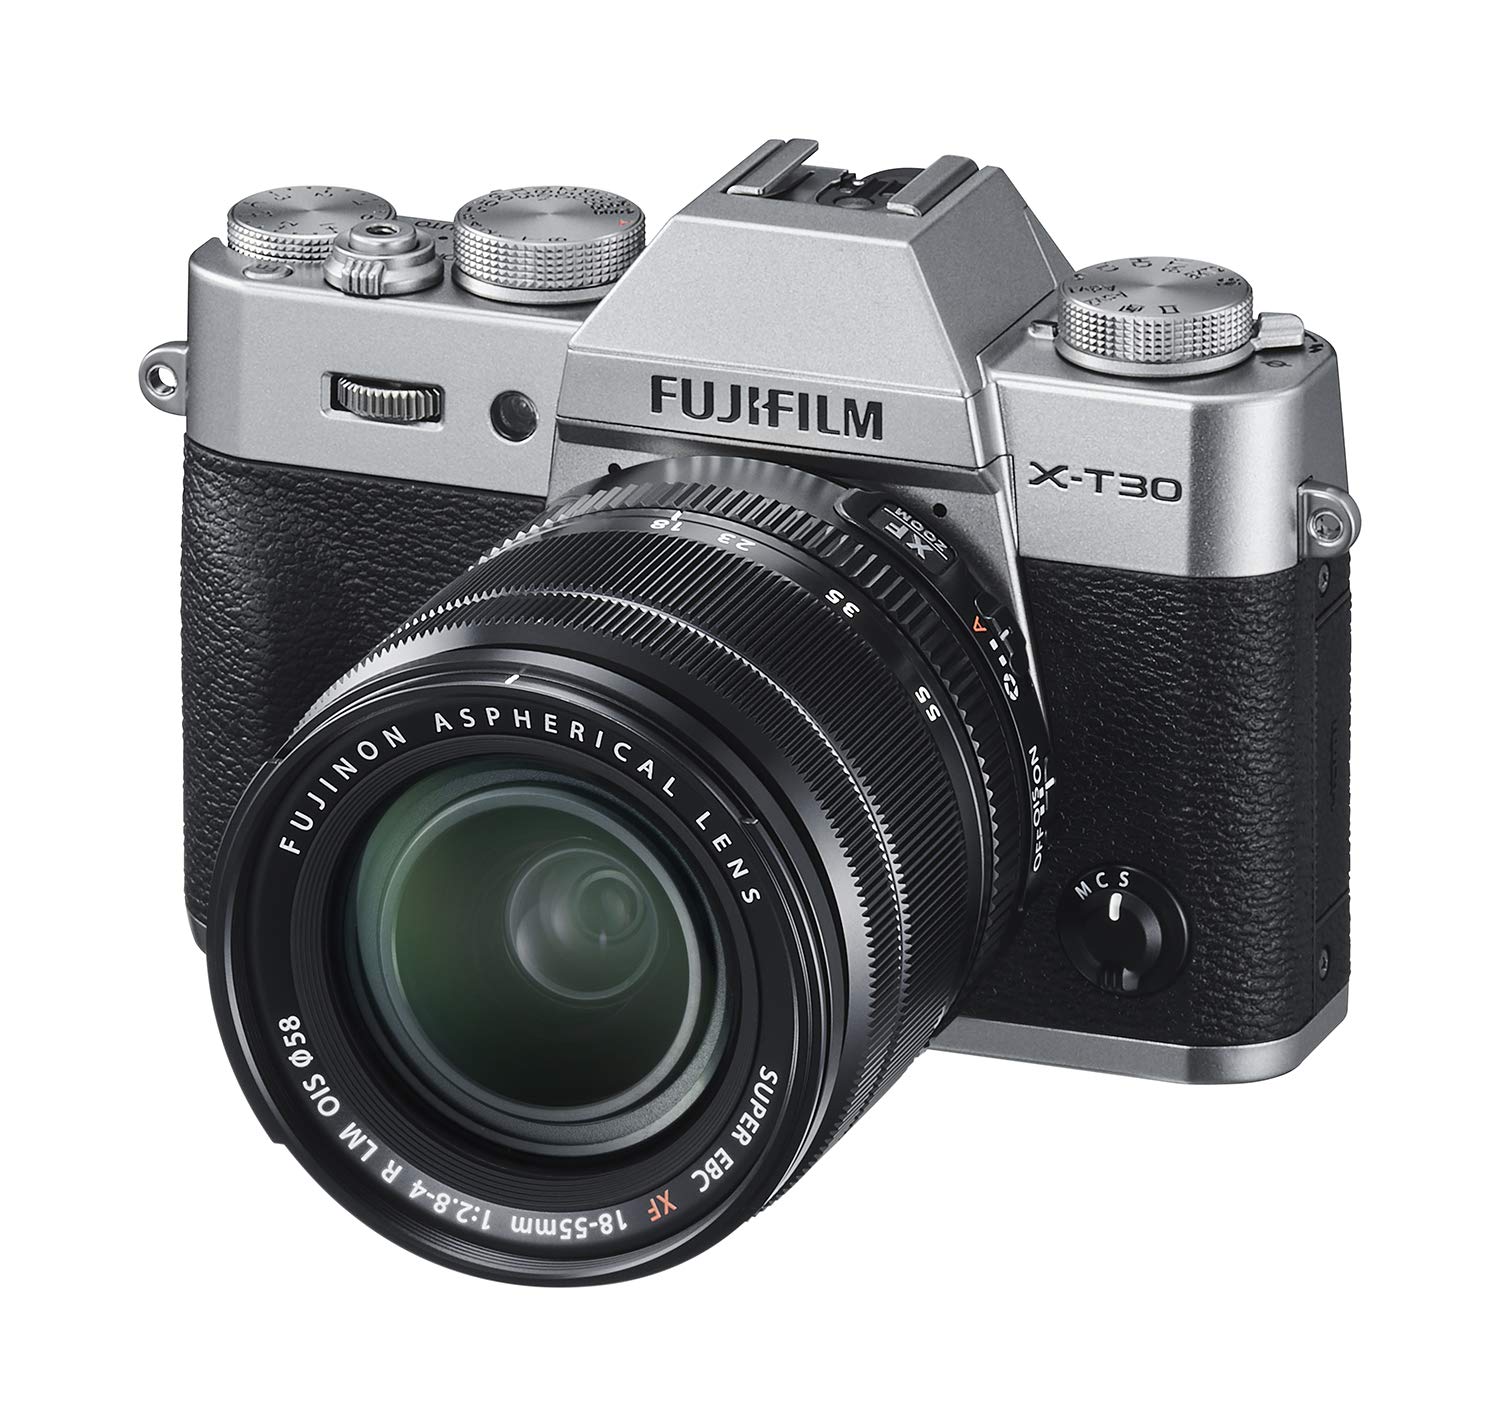 Fujifilm Aparat bezlusterkowy  X-T30 z obiektywem XF 18-55mm f/2.8-4 R LM OIS – węgiel drzewny